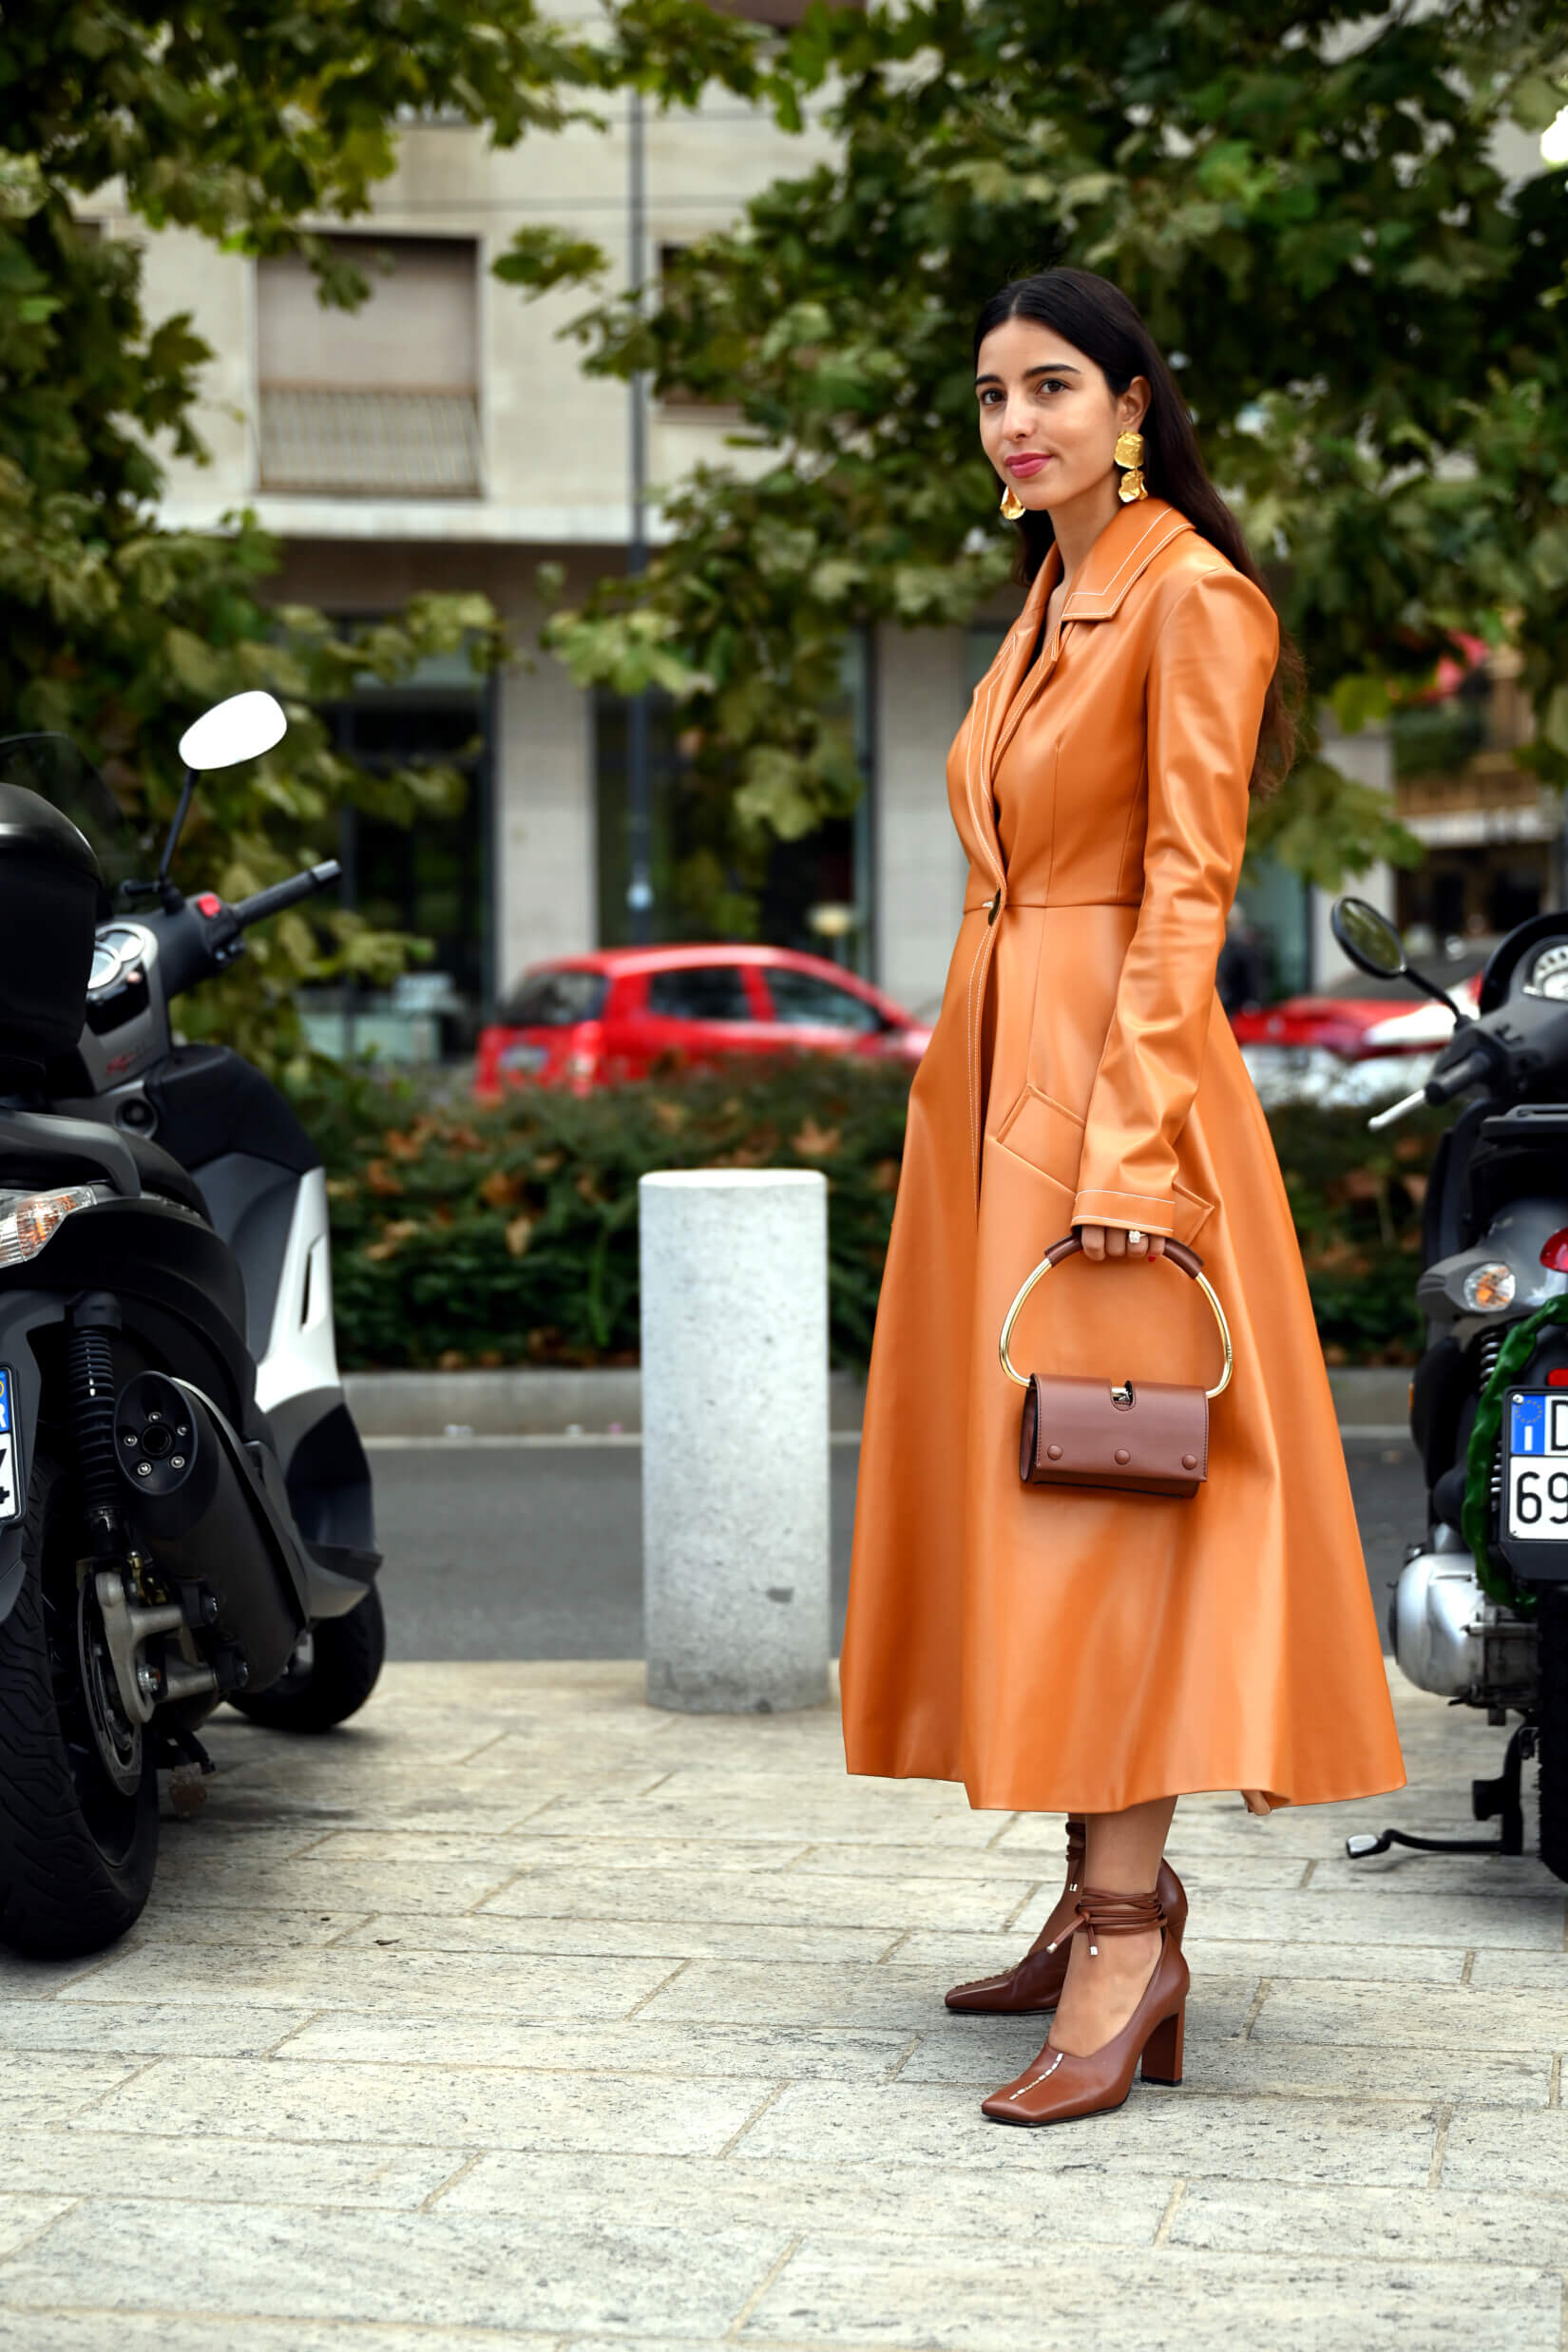 Comment porter le manteau en cuir : 10 tenues pour femme